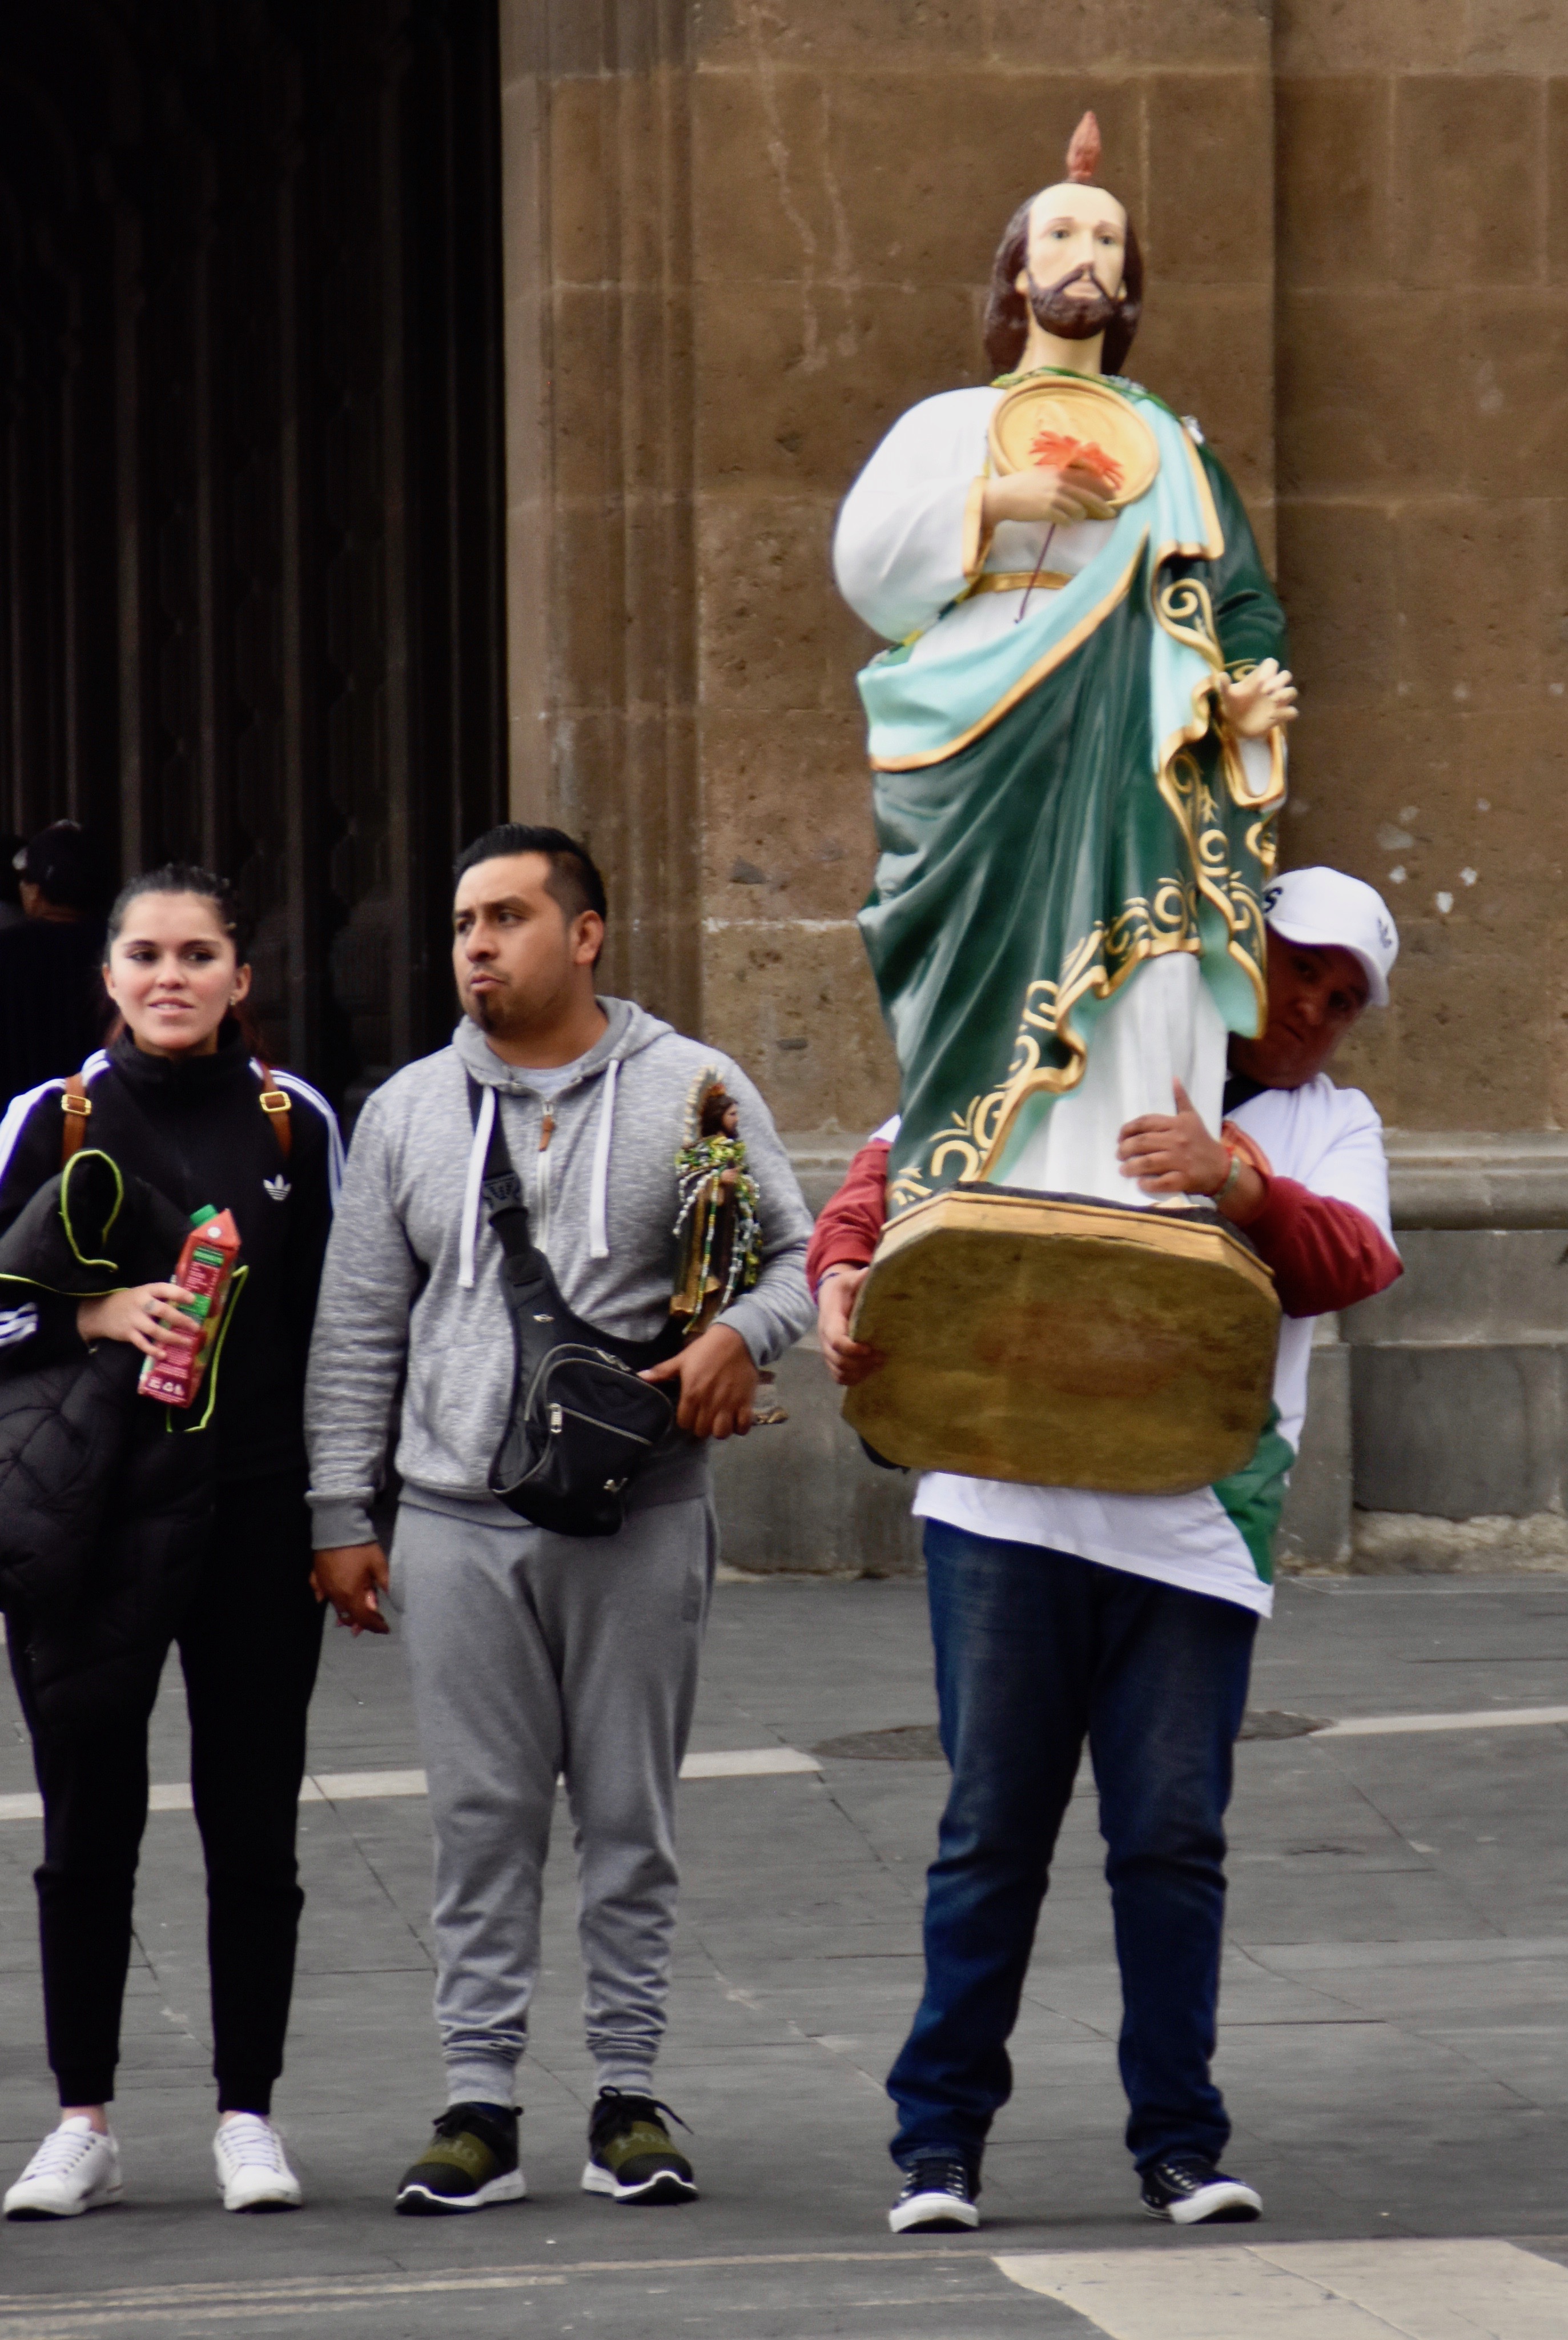 Carting a Saint, Mexico City